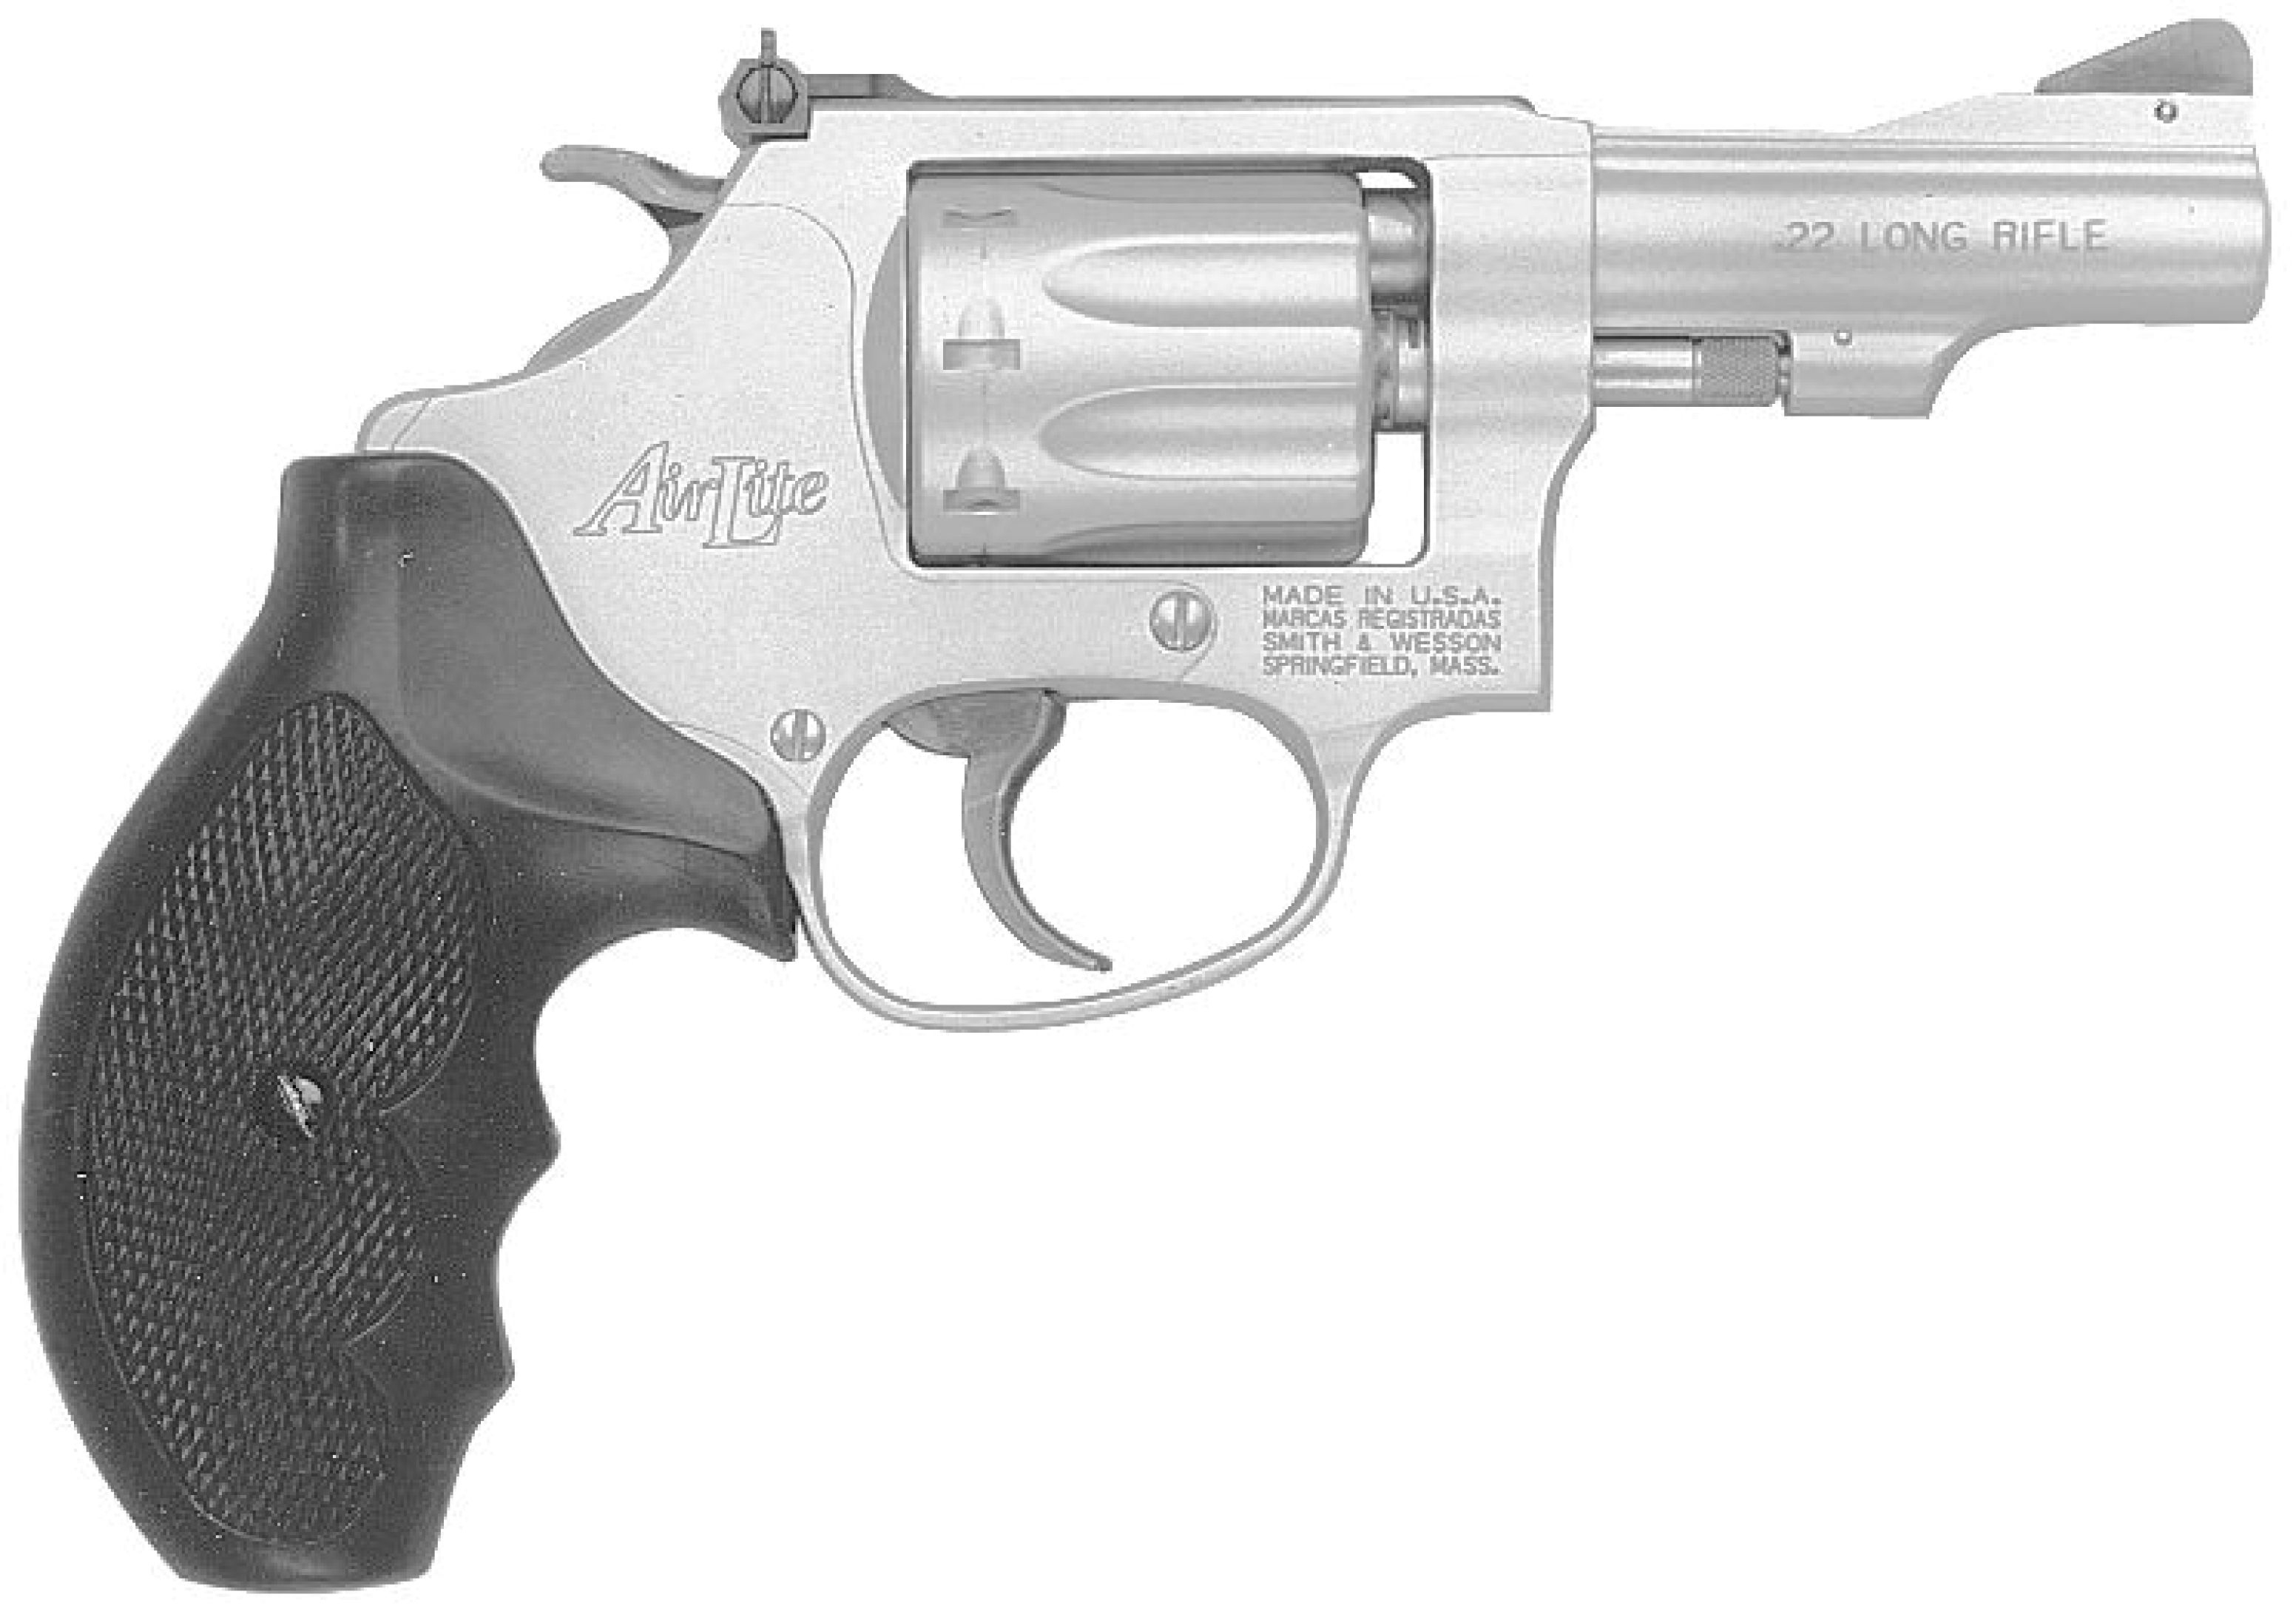 Model 317 AirLite Kit Gun